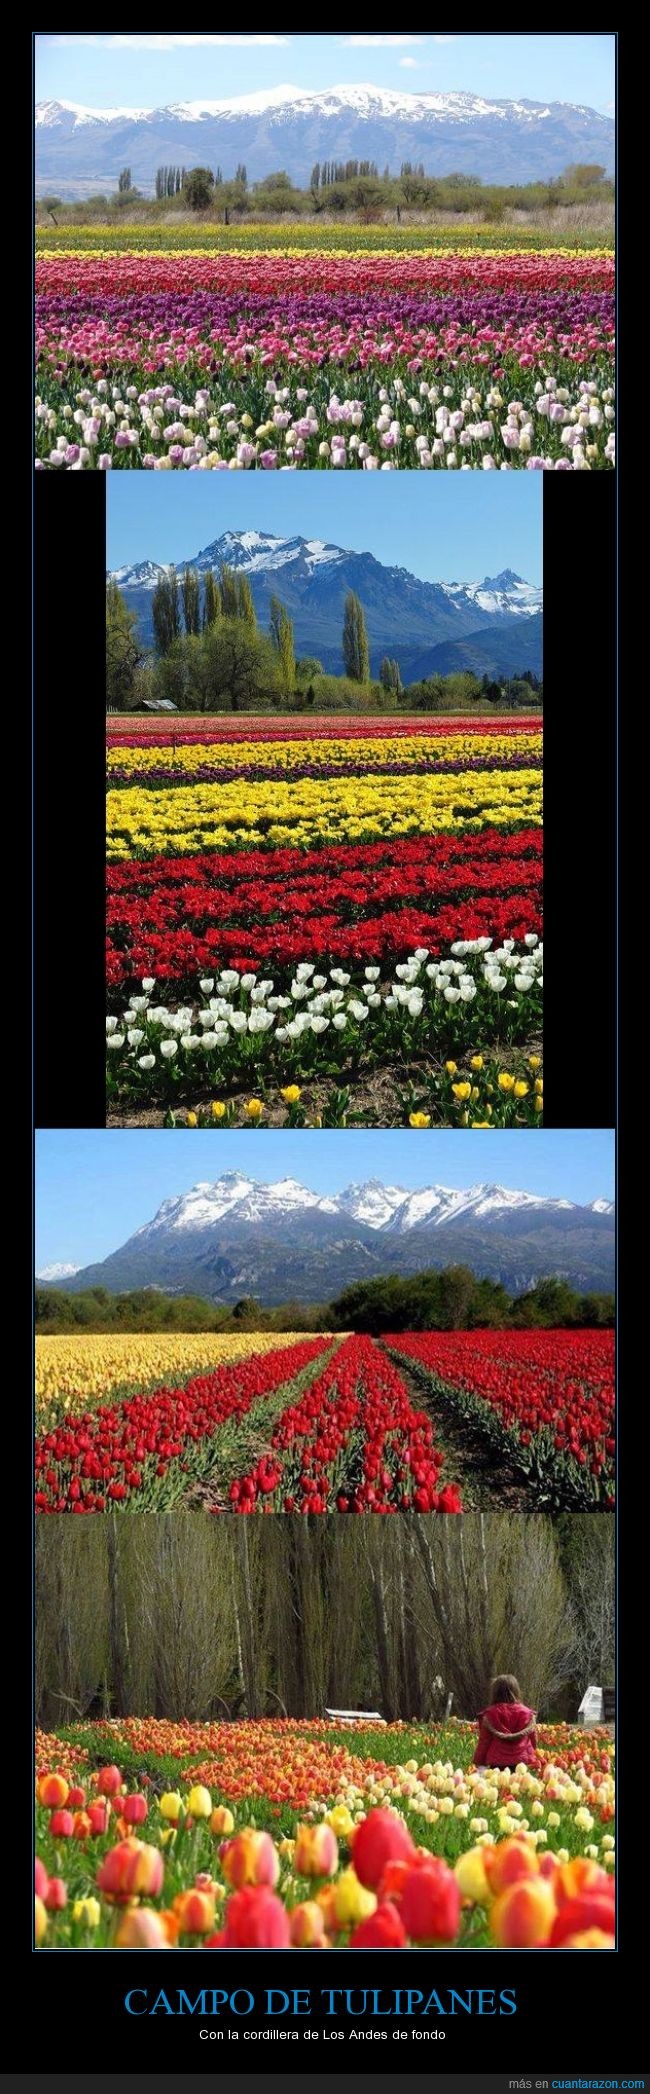 Trevelin,Chubut,Argentina,tulipanes